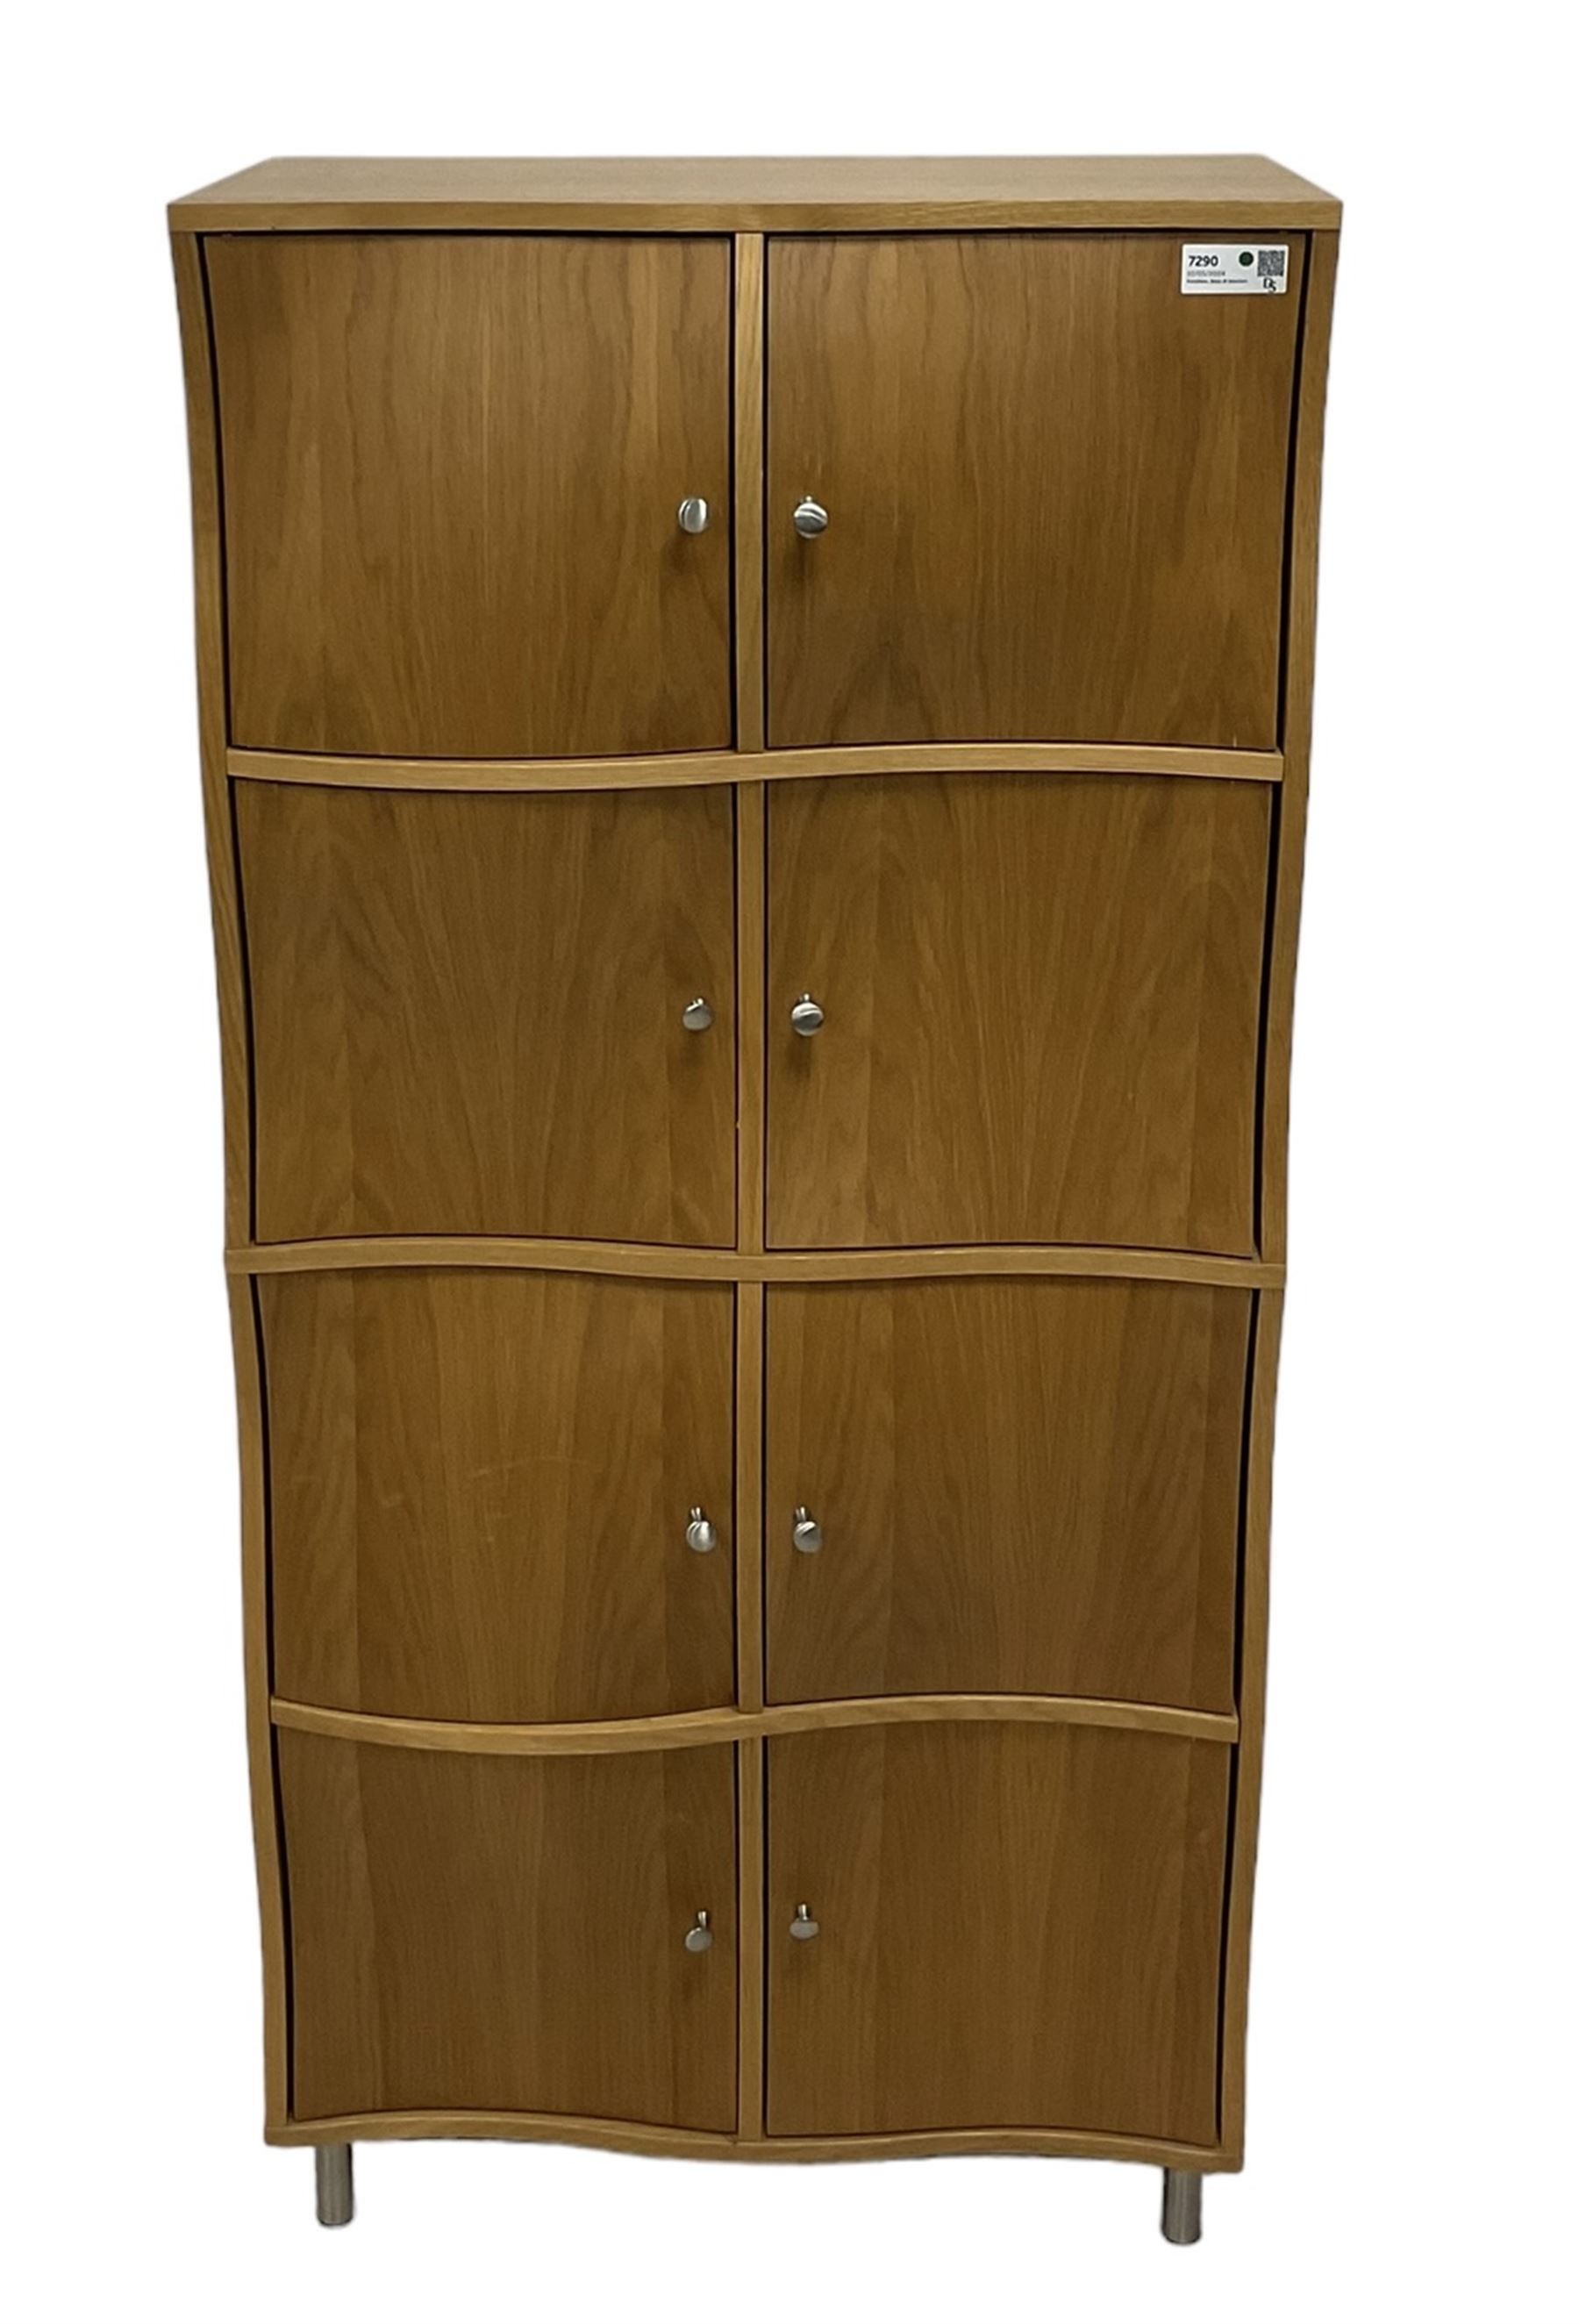 Contemporary oak wavy door cupboard - Image 2 of 6